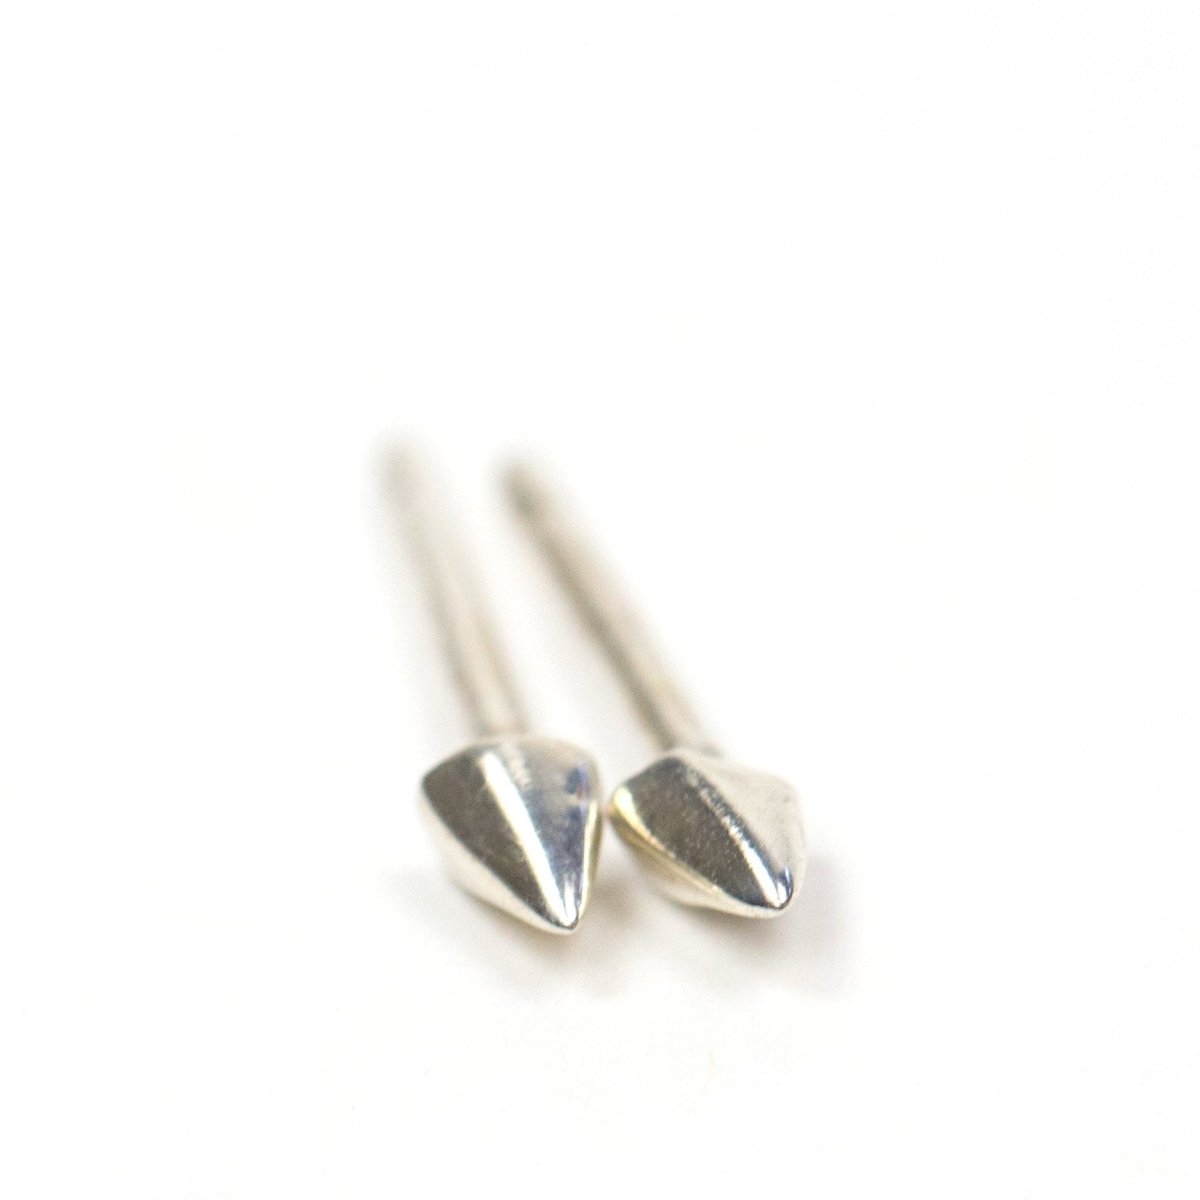 Make in Portland Upper Metal Class Earrings